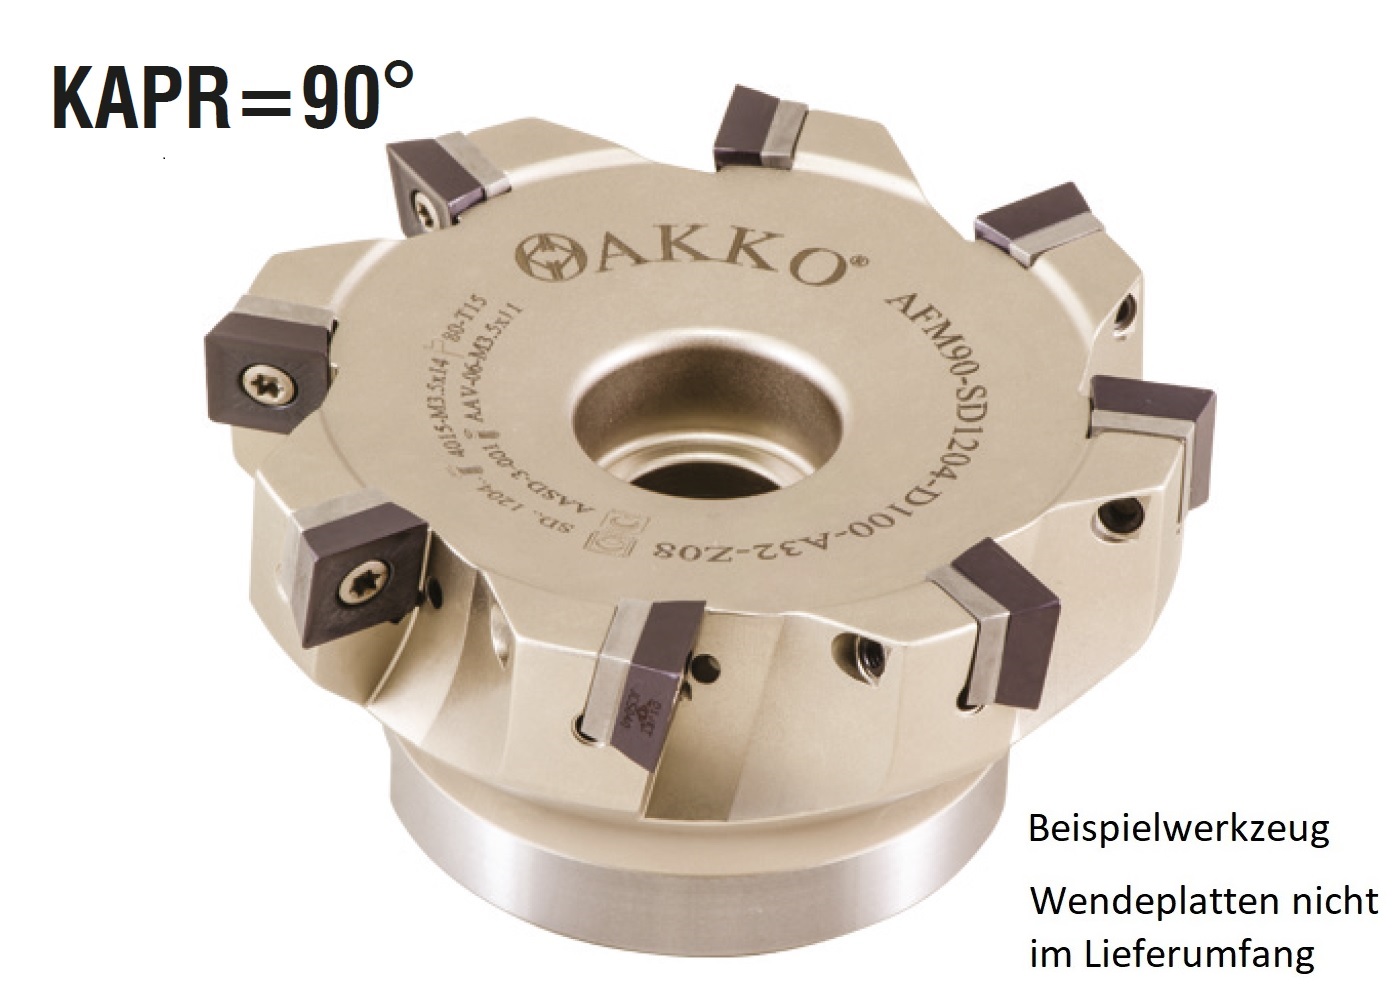 AKKO-Eckmesserkopf ø 63 mm, 90° Anstellwinkel, kompatibel mit Dijet SDMT 1204..
Schaft-Ausführung ø 22 mm (Typ A), mit Innenkühlung, Z=5